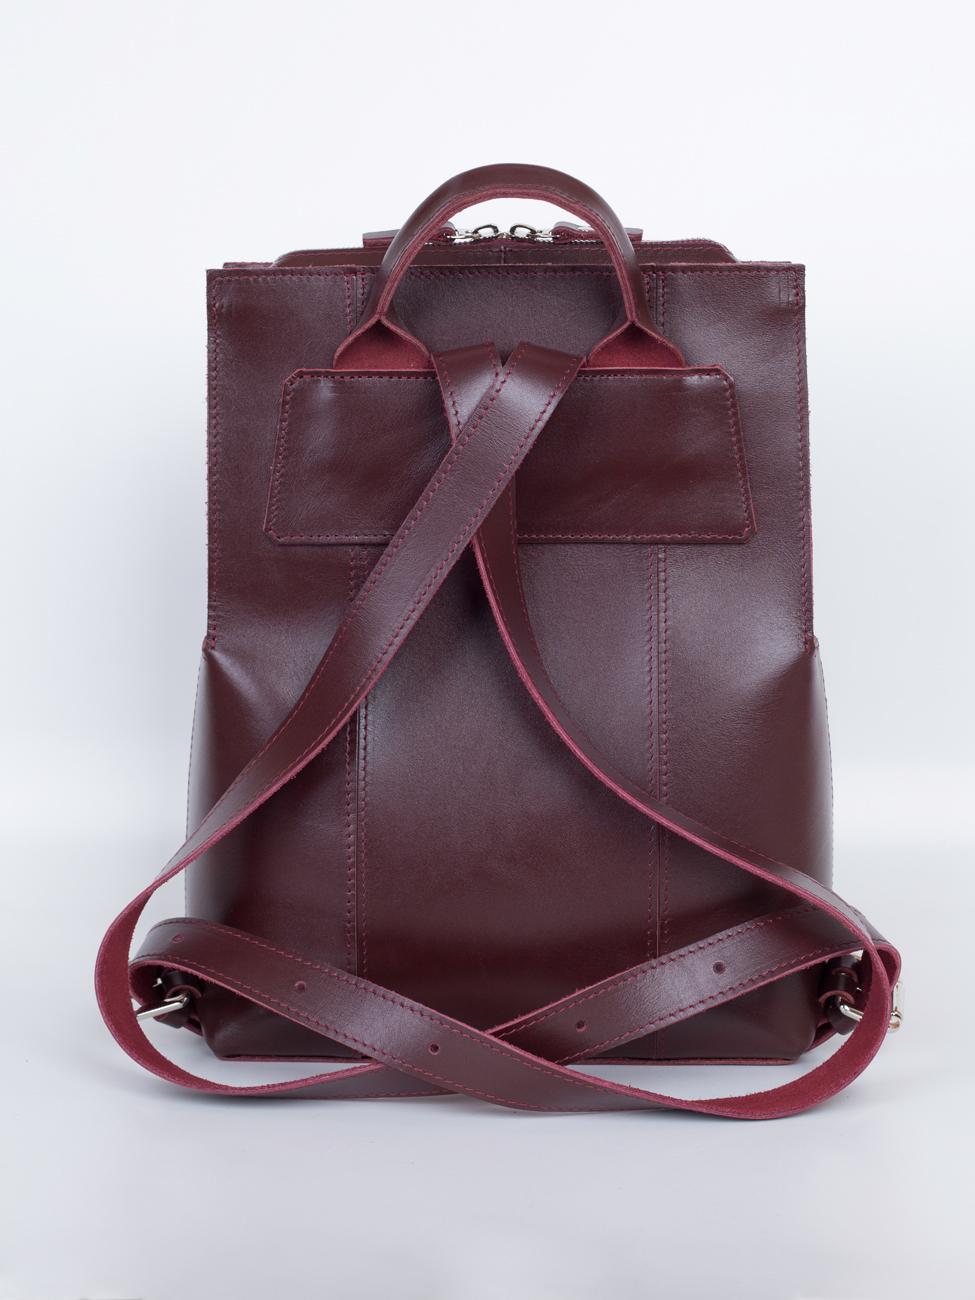 Женский рюкзак из натуральной кожи бордовый B014 burgundy